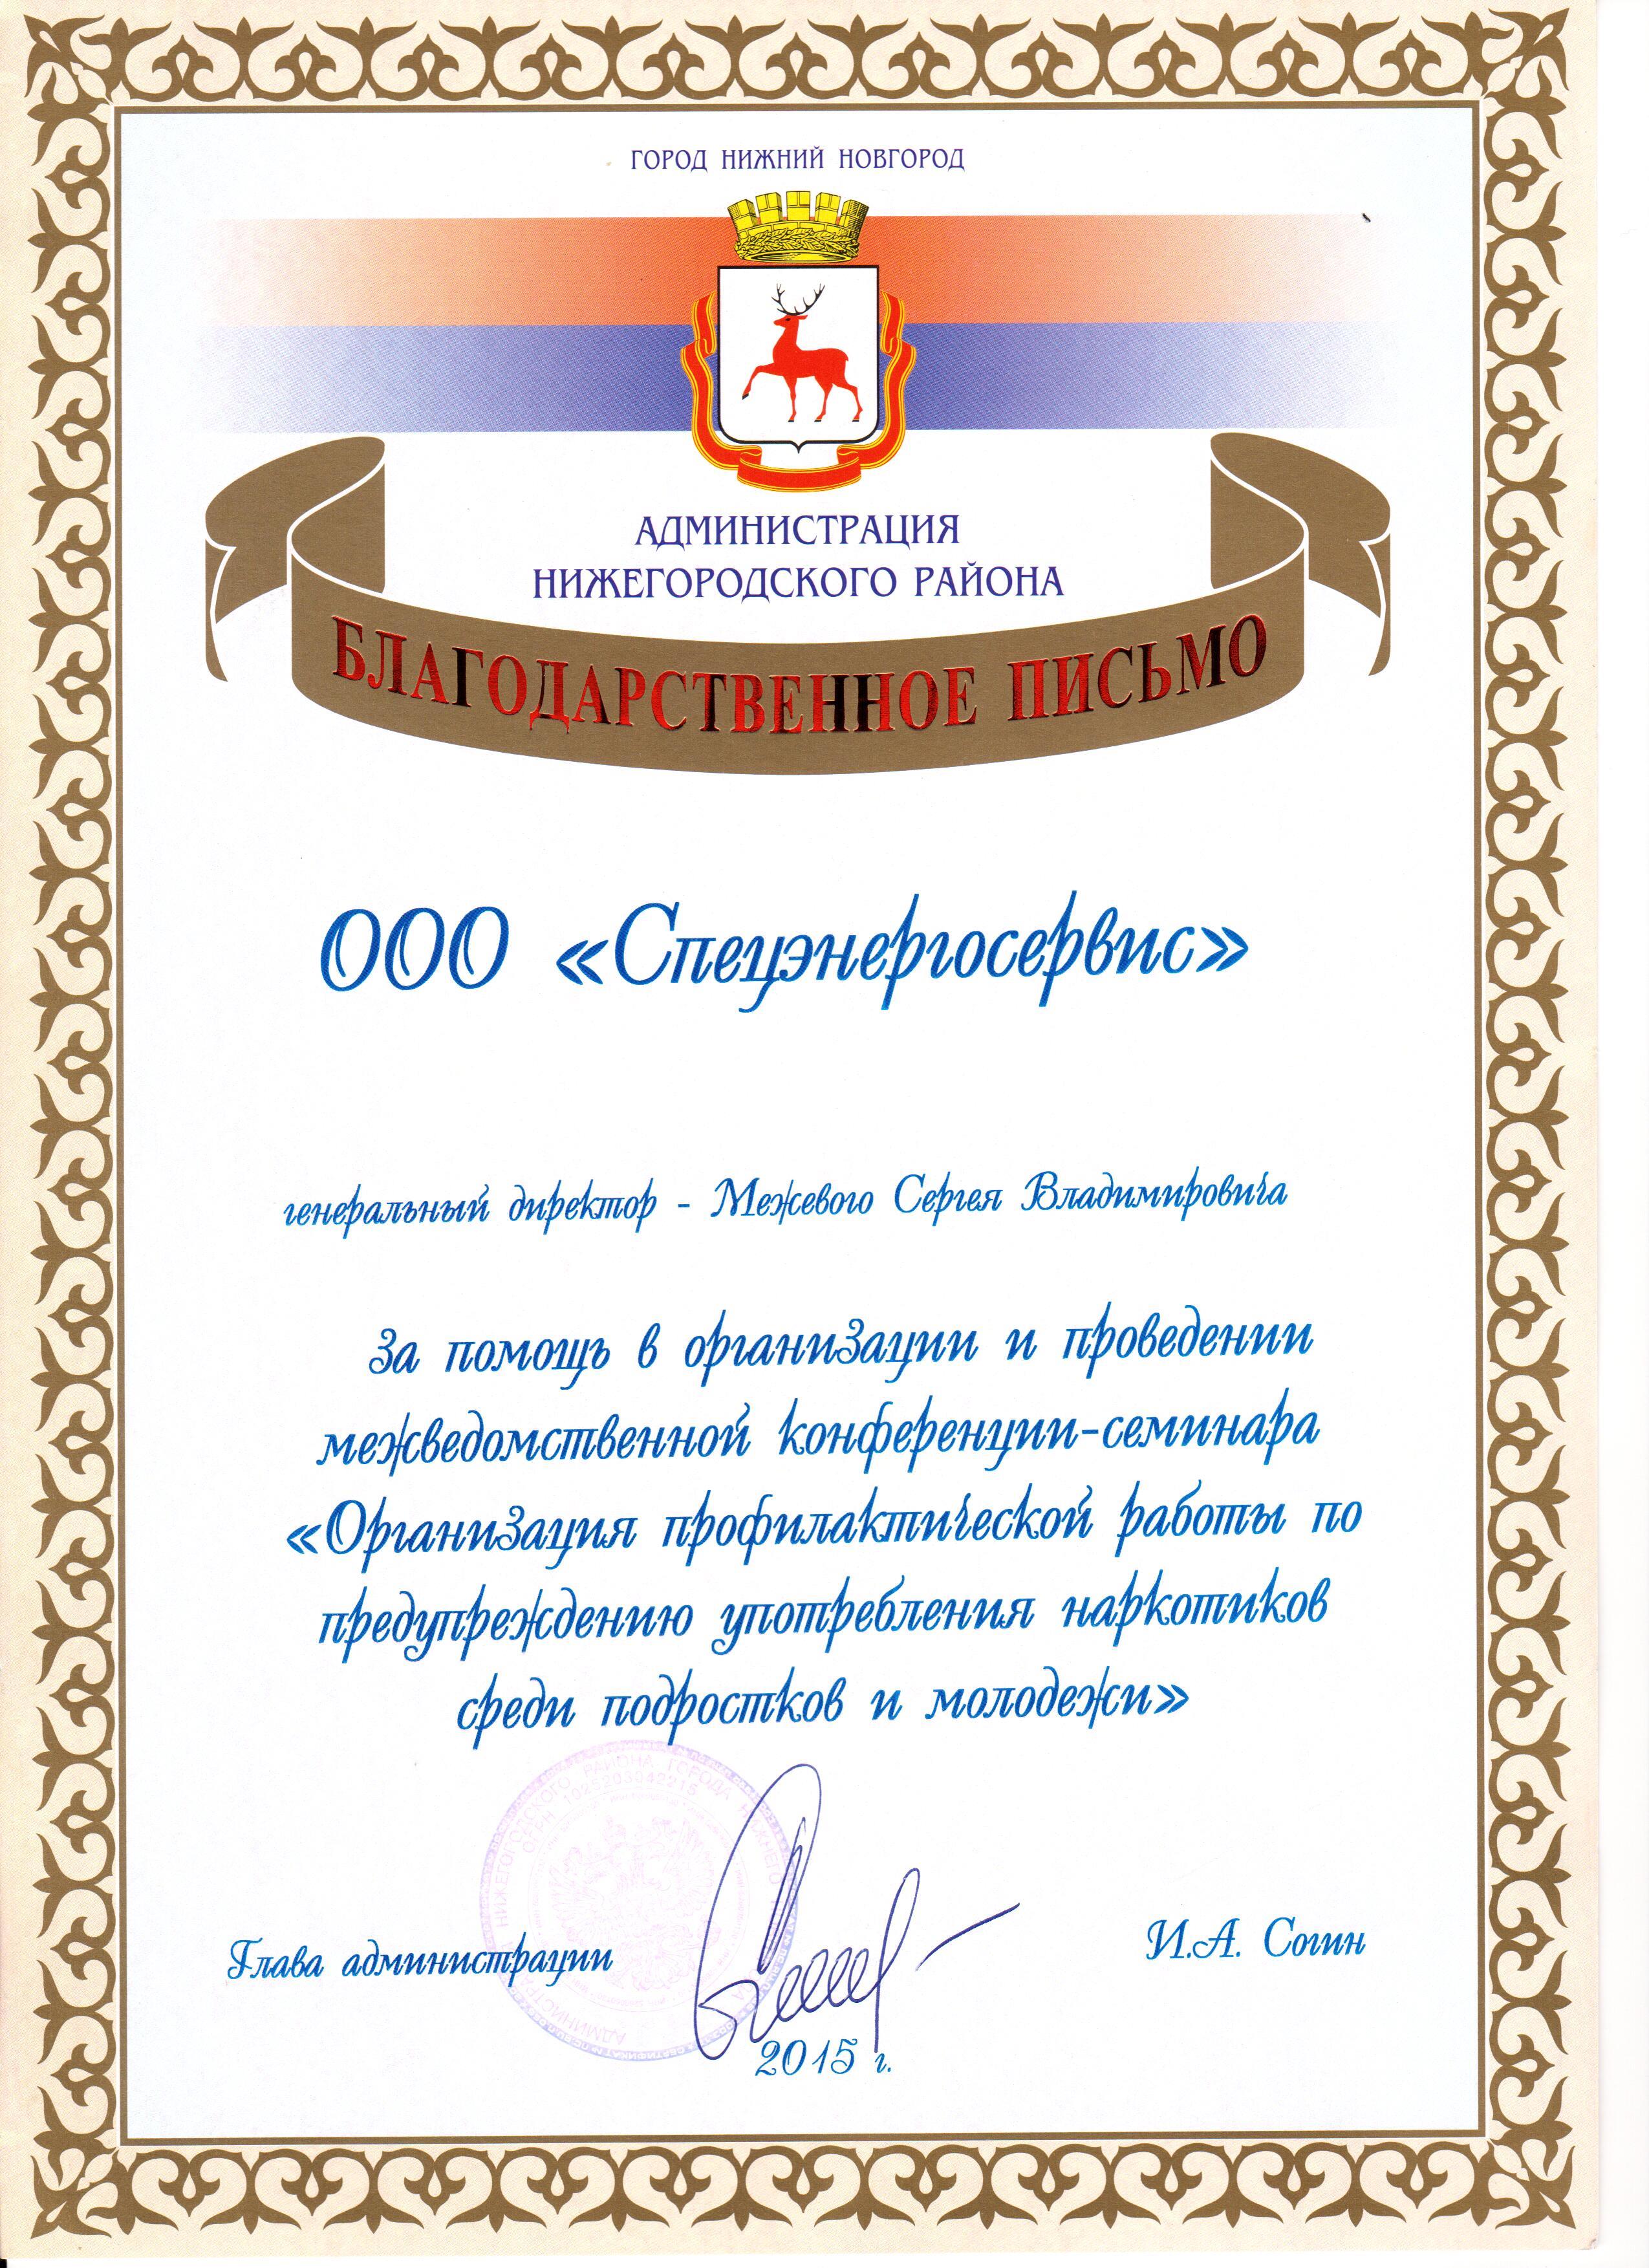 Administratciia-Nizhegorodskogo-r-na-2015